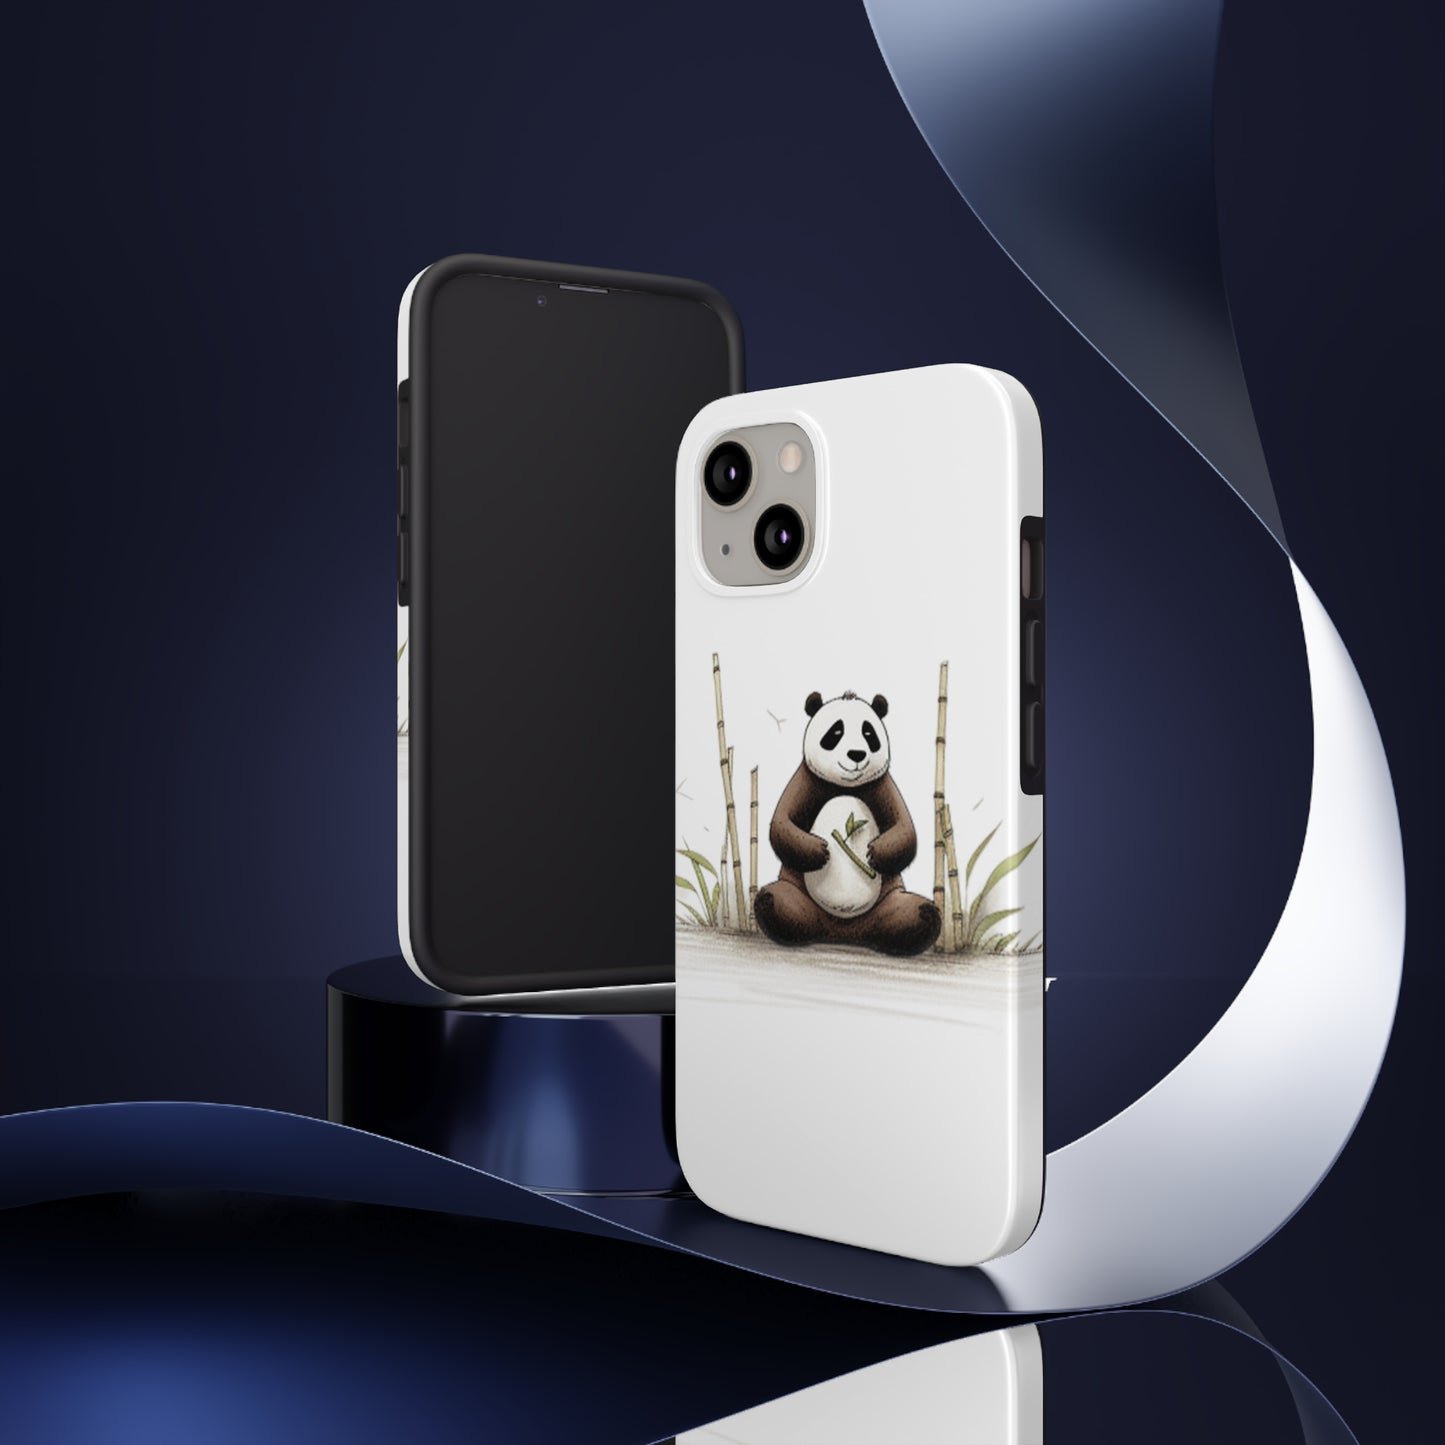 Bamboo Panda Phone Cases - Tough and Zen!